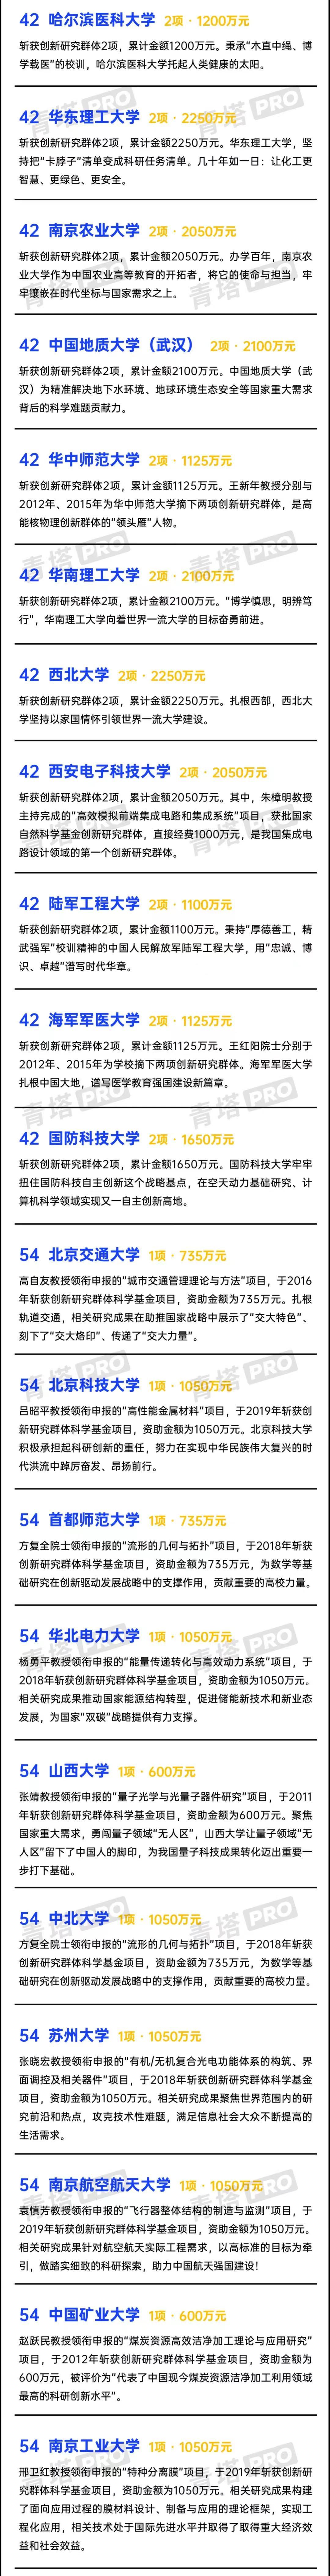 高校创新研究50强：77所大学上榜！武汉大学第15名，燕山大学优秀